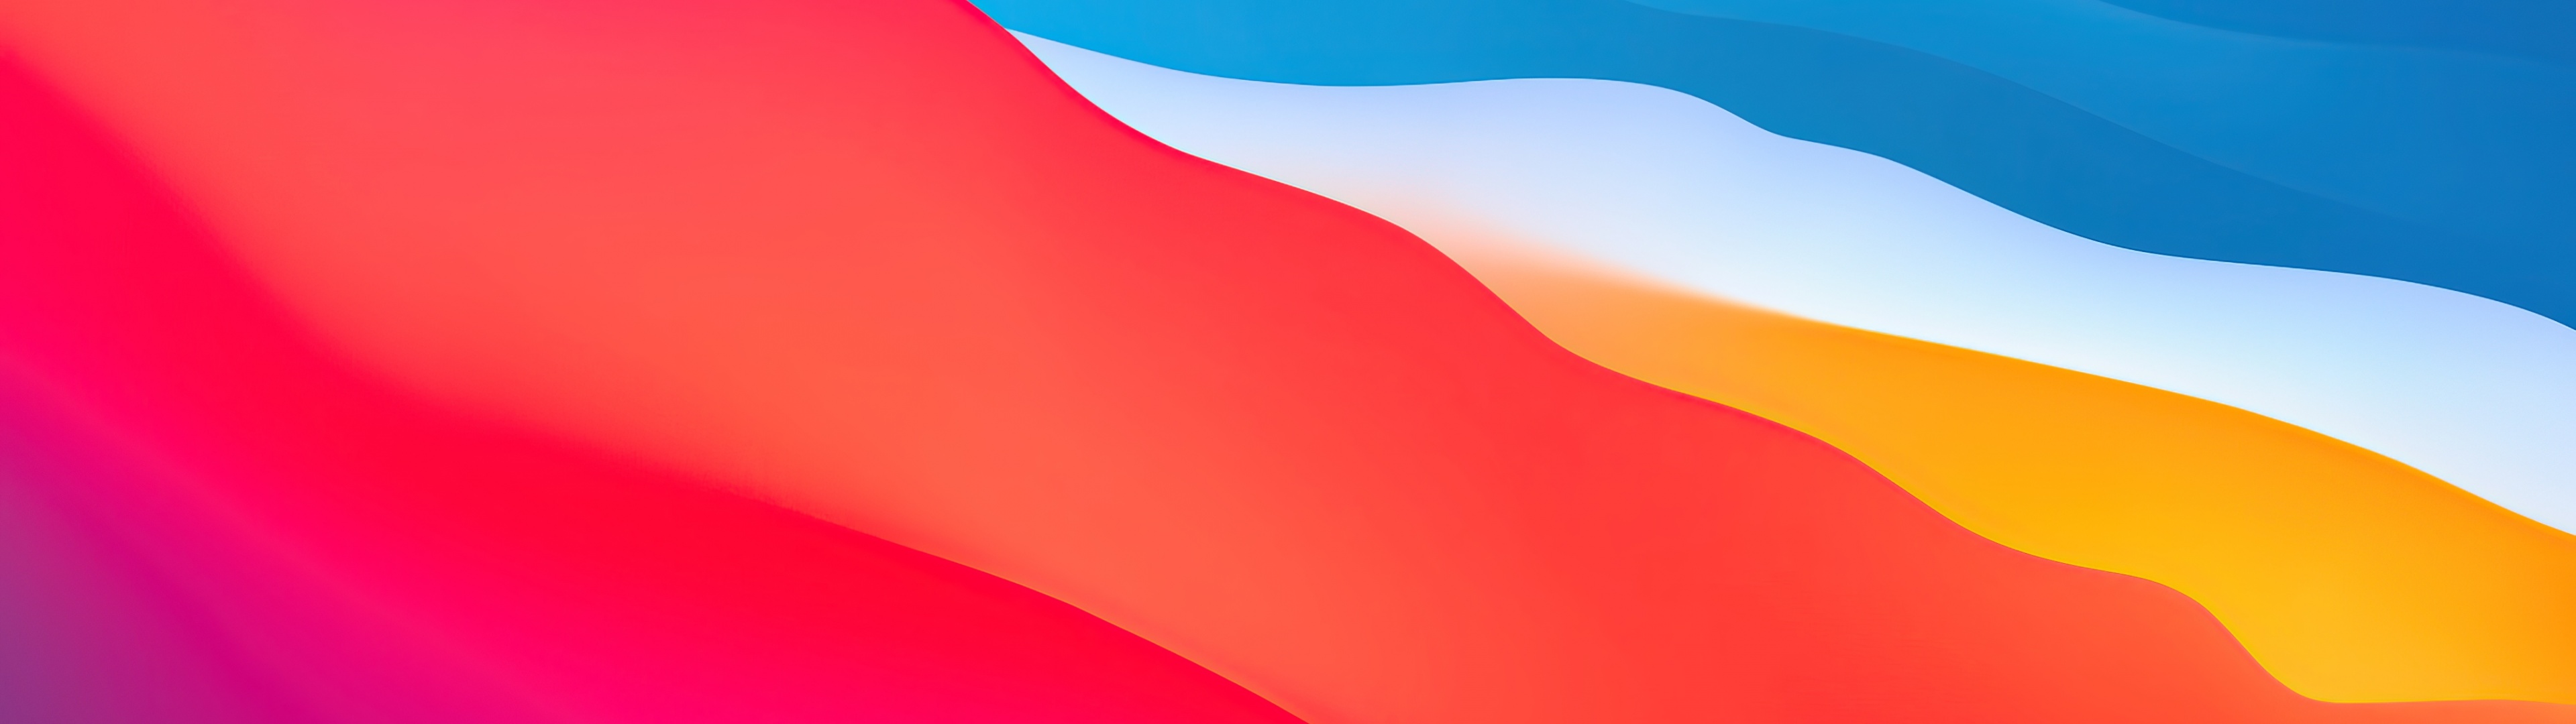 Big Sur của macOS đem đến cho người dùng sự mới mẻ và tươi trẻ với những hình ảnh nền đẹp mắt nhất. Thiết kế sang trọng và tối giản sẽ khiến bạn yêu thích ngay từ lần nhìn đầu tiên. Khám phá ngay bức hình nền macOS Big Sur đầy sống động để mang lại cho bạn sự nổi trội.